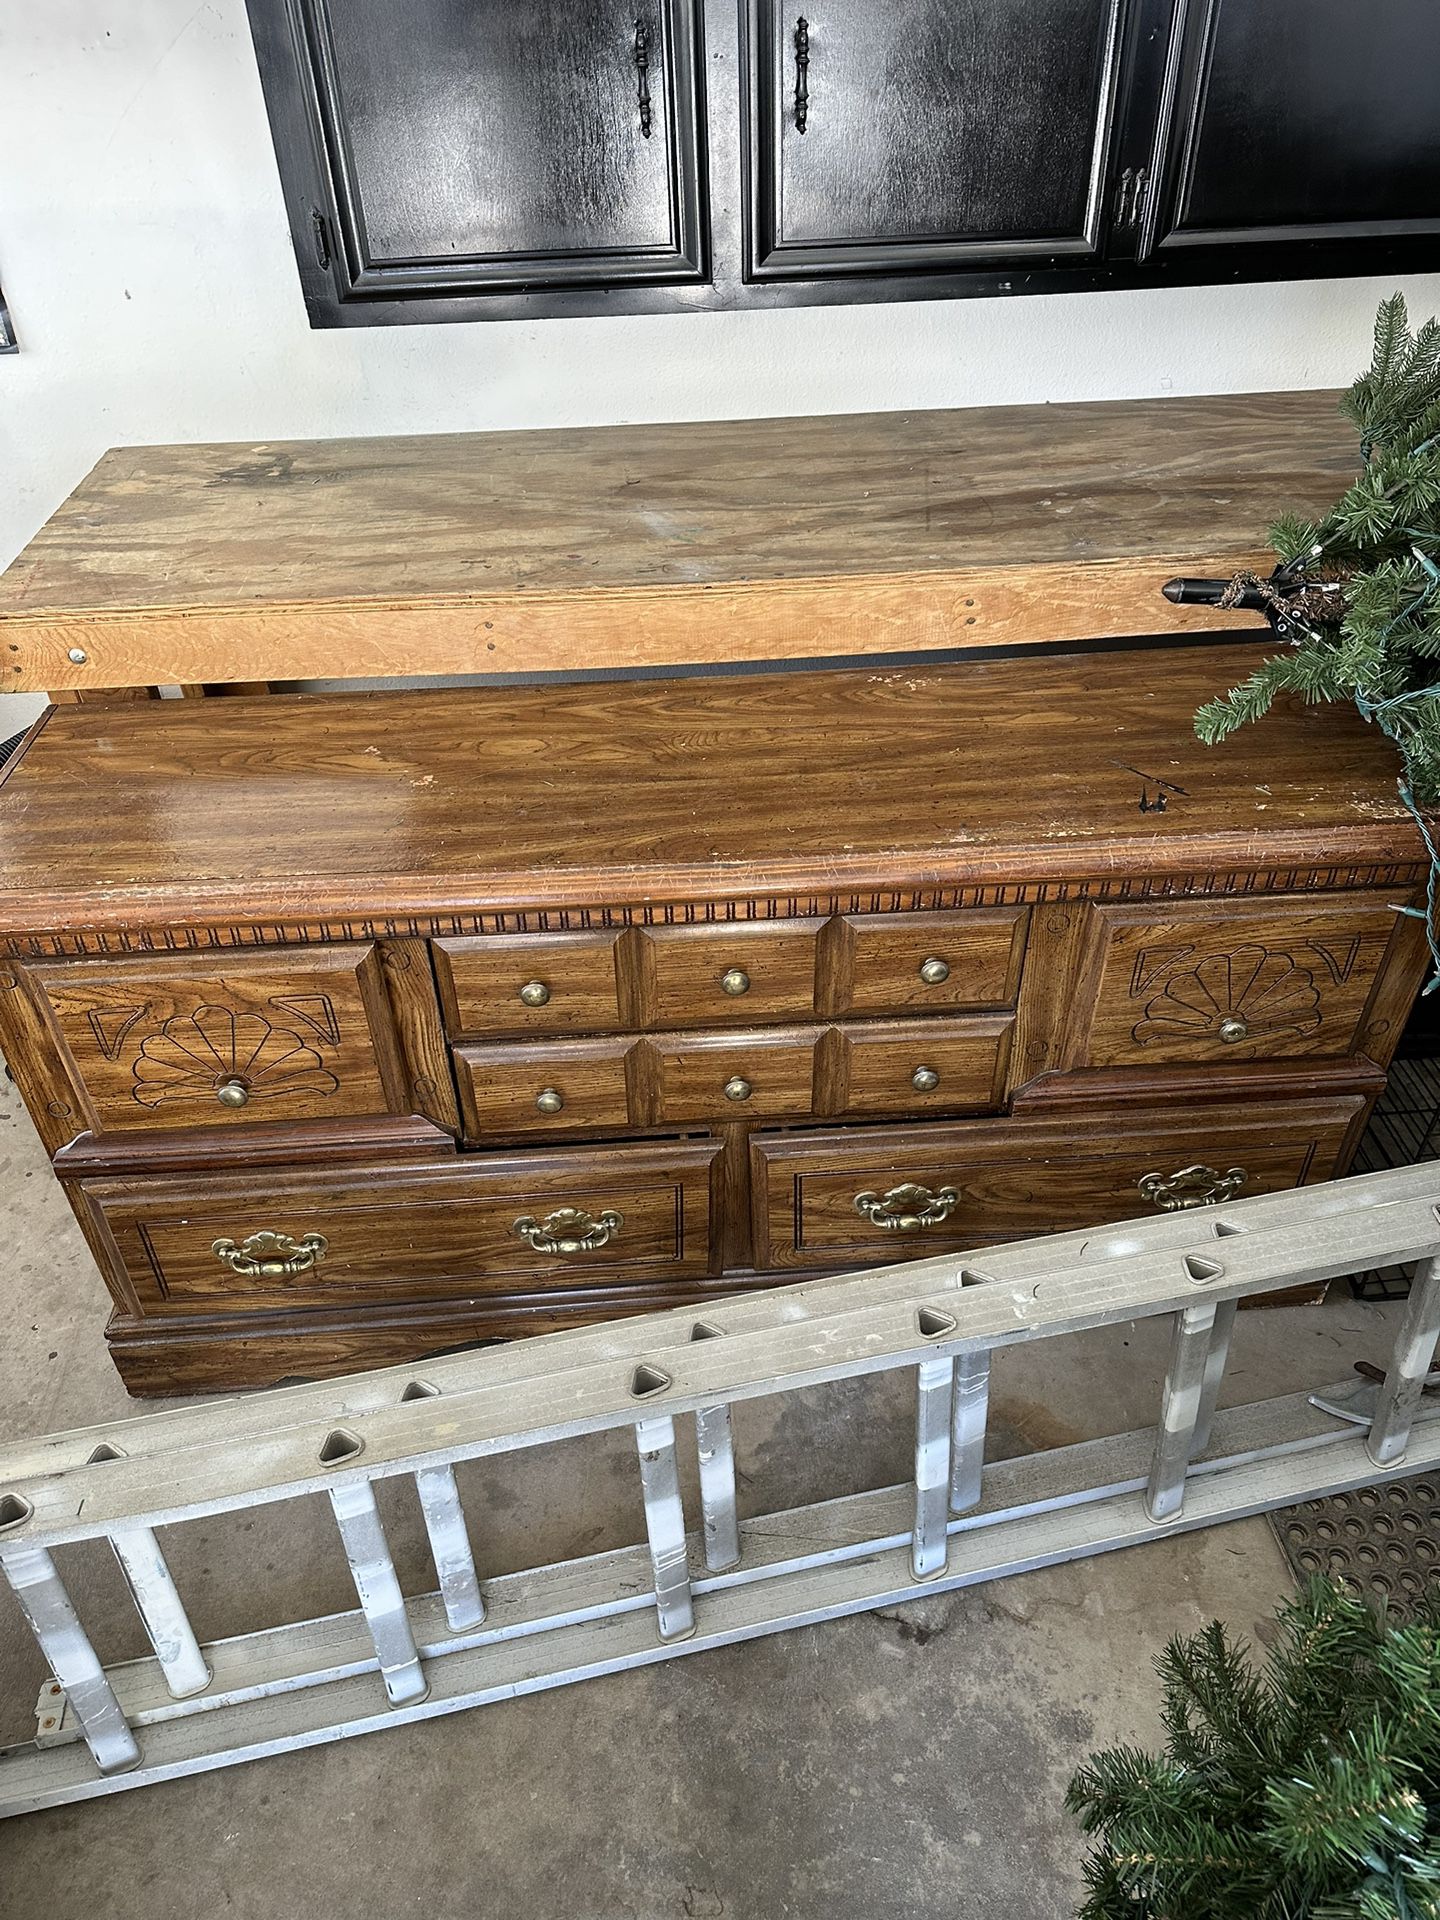 Antique Real Wood 9 Drawer Dresser